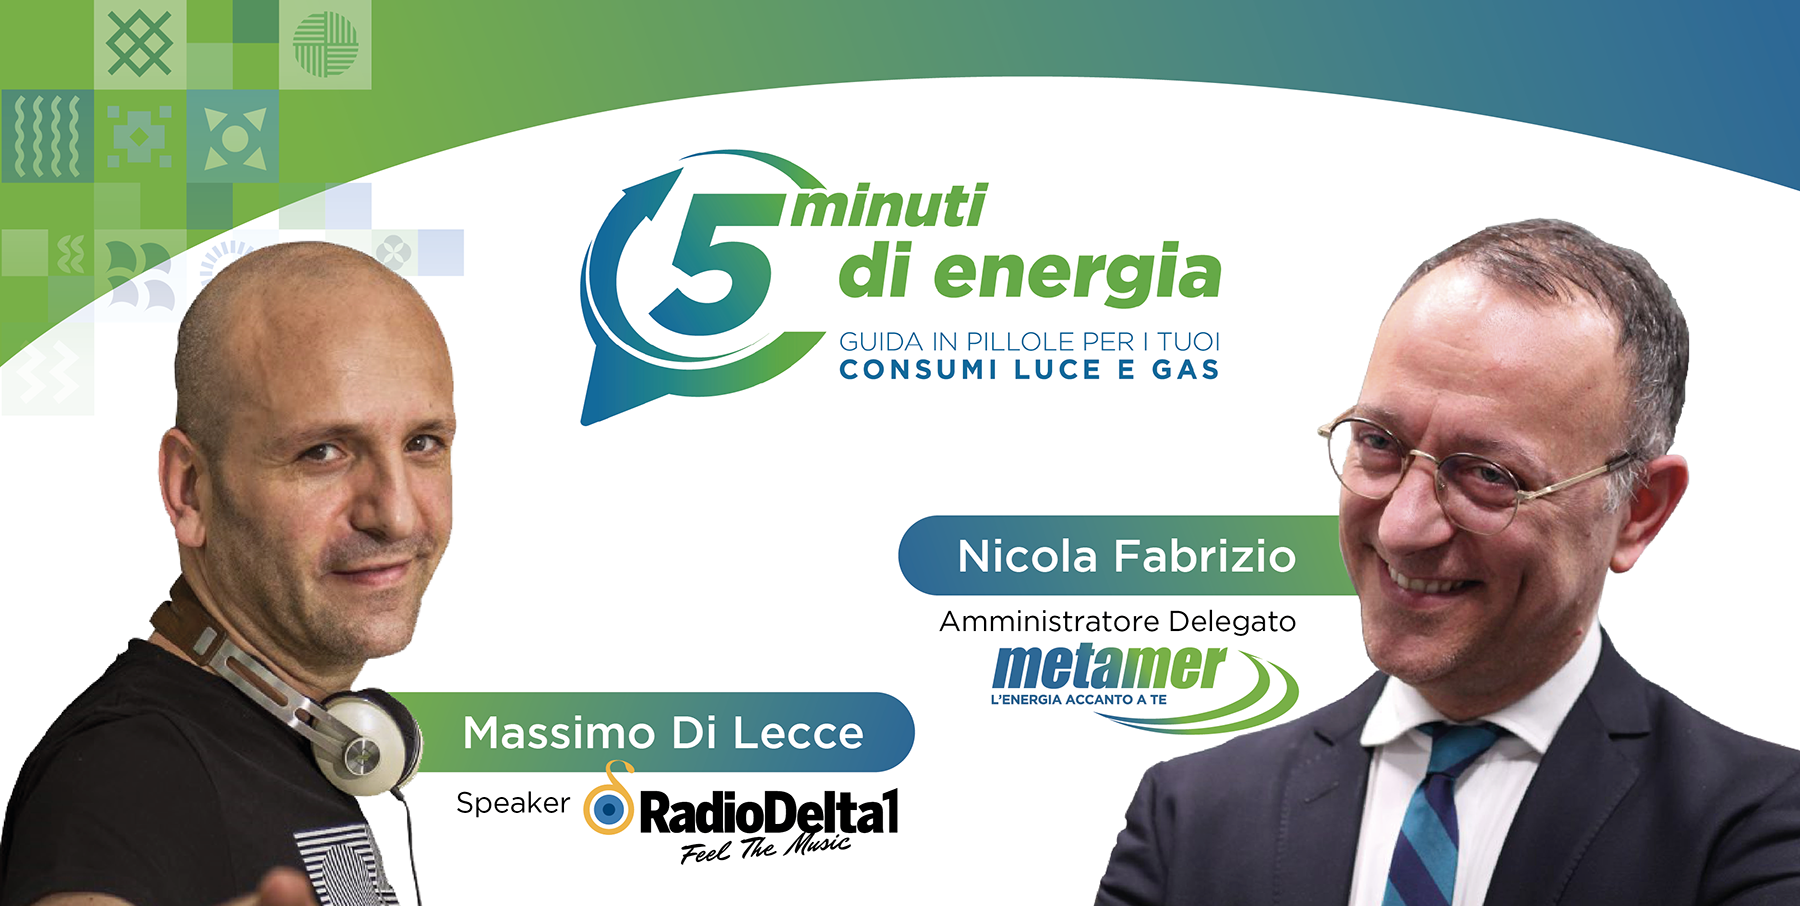 5 minuti di energia con Massimo Di Lecce e Nicola Fabrizio su Radio Delta 1